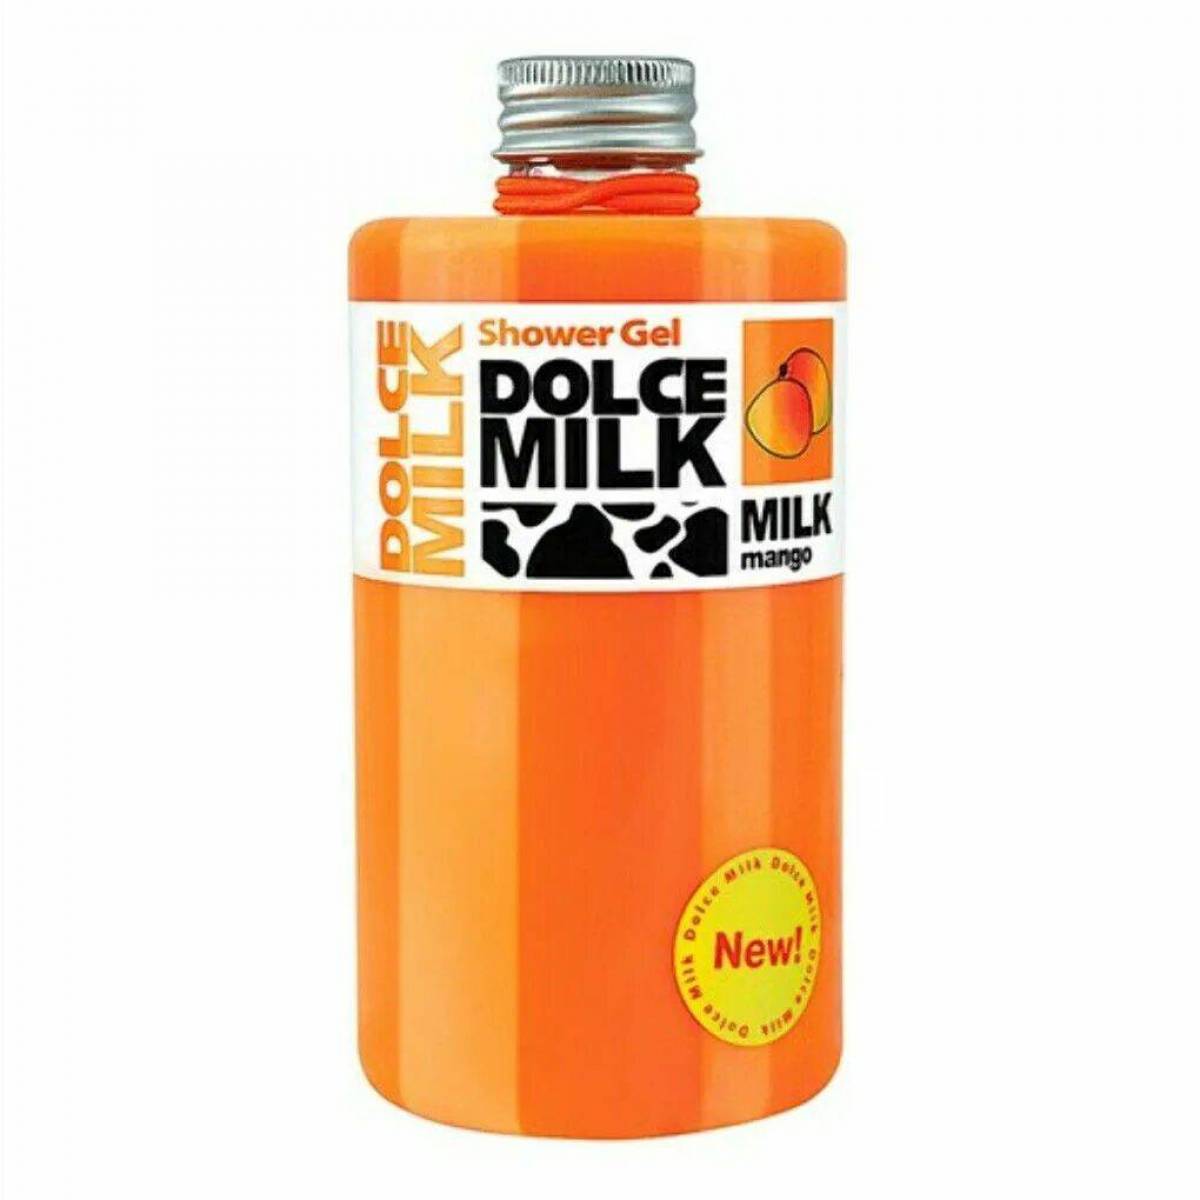 Dolce milk #11